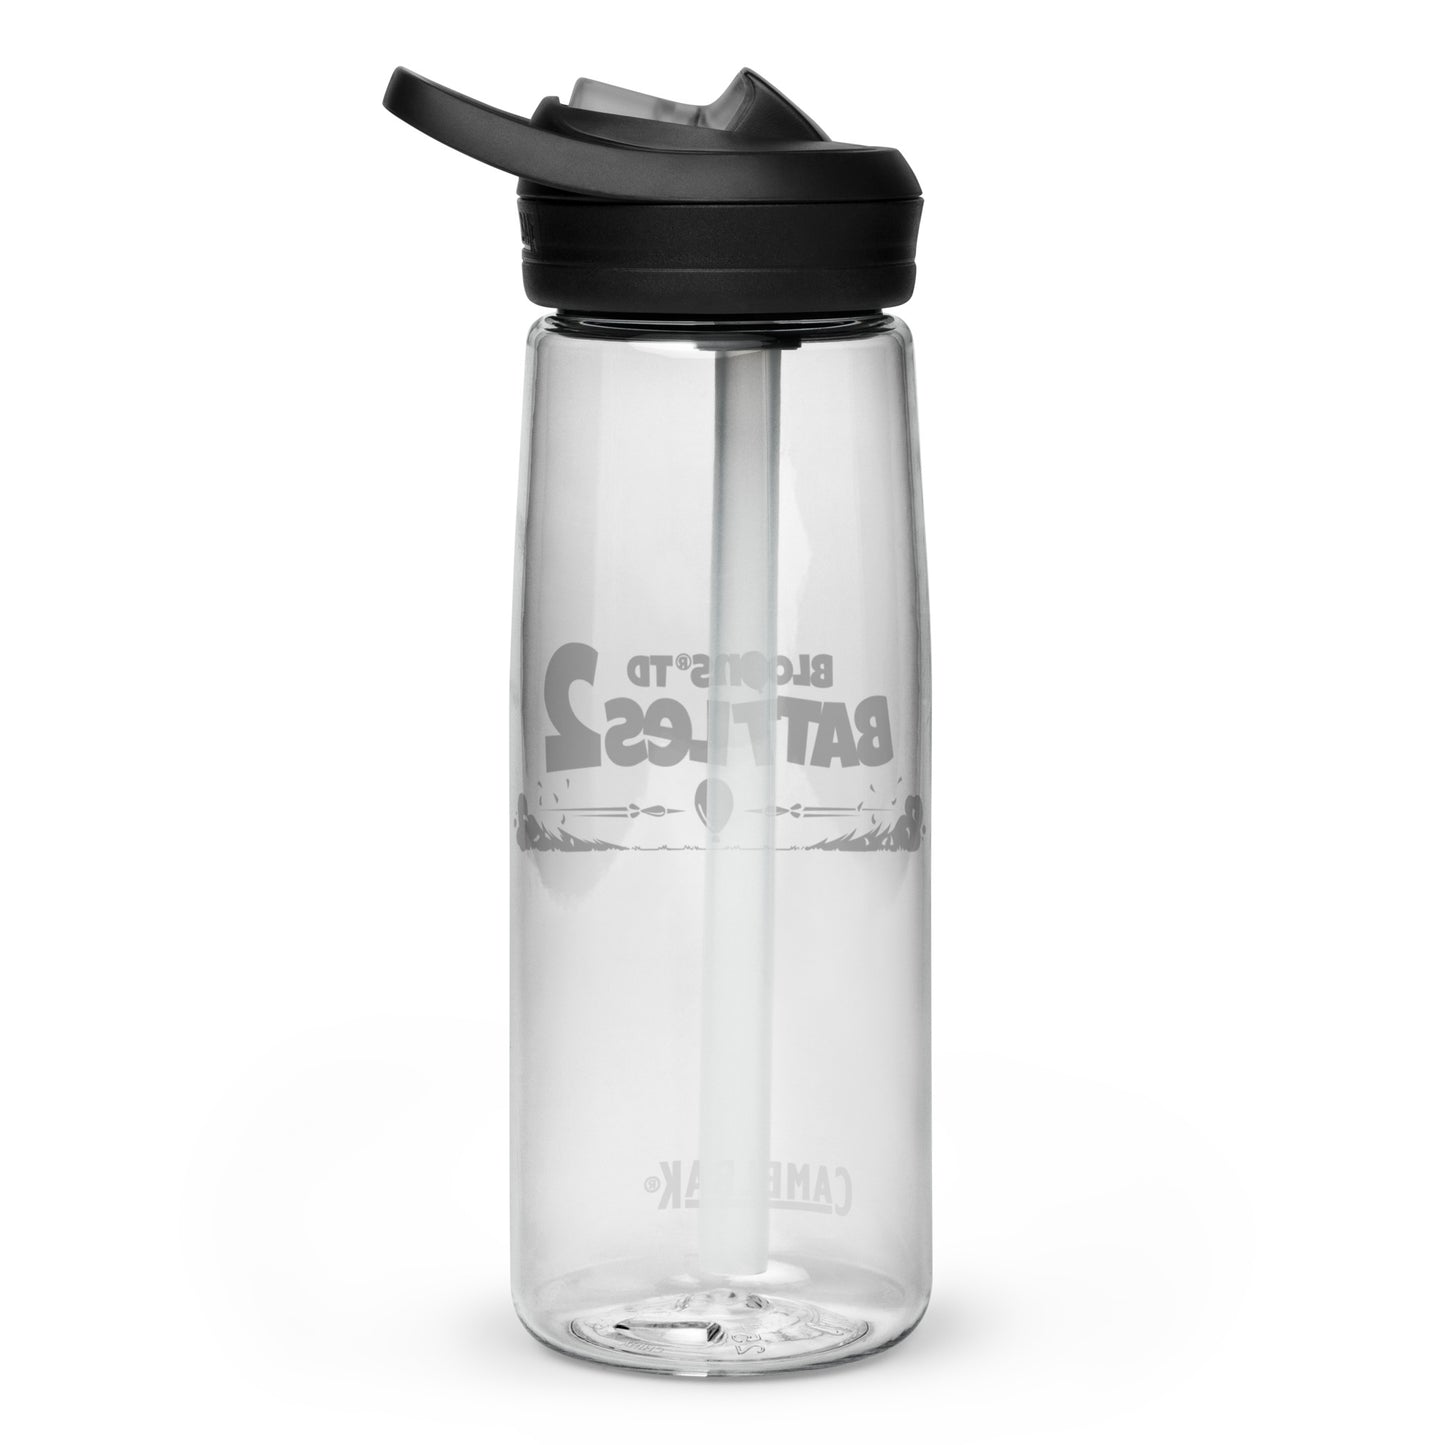 Low Flying - Battles 2 Sports Water Bottle | CamelBak Eddy®+